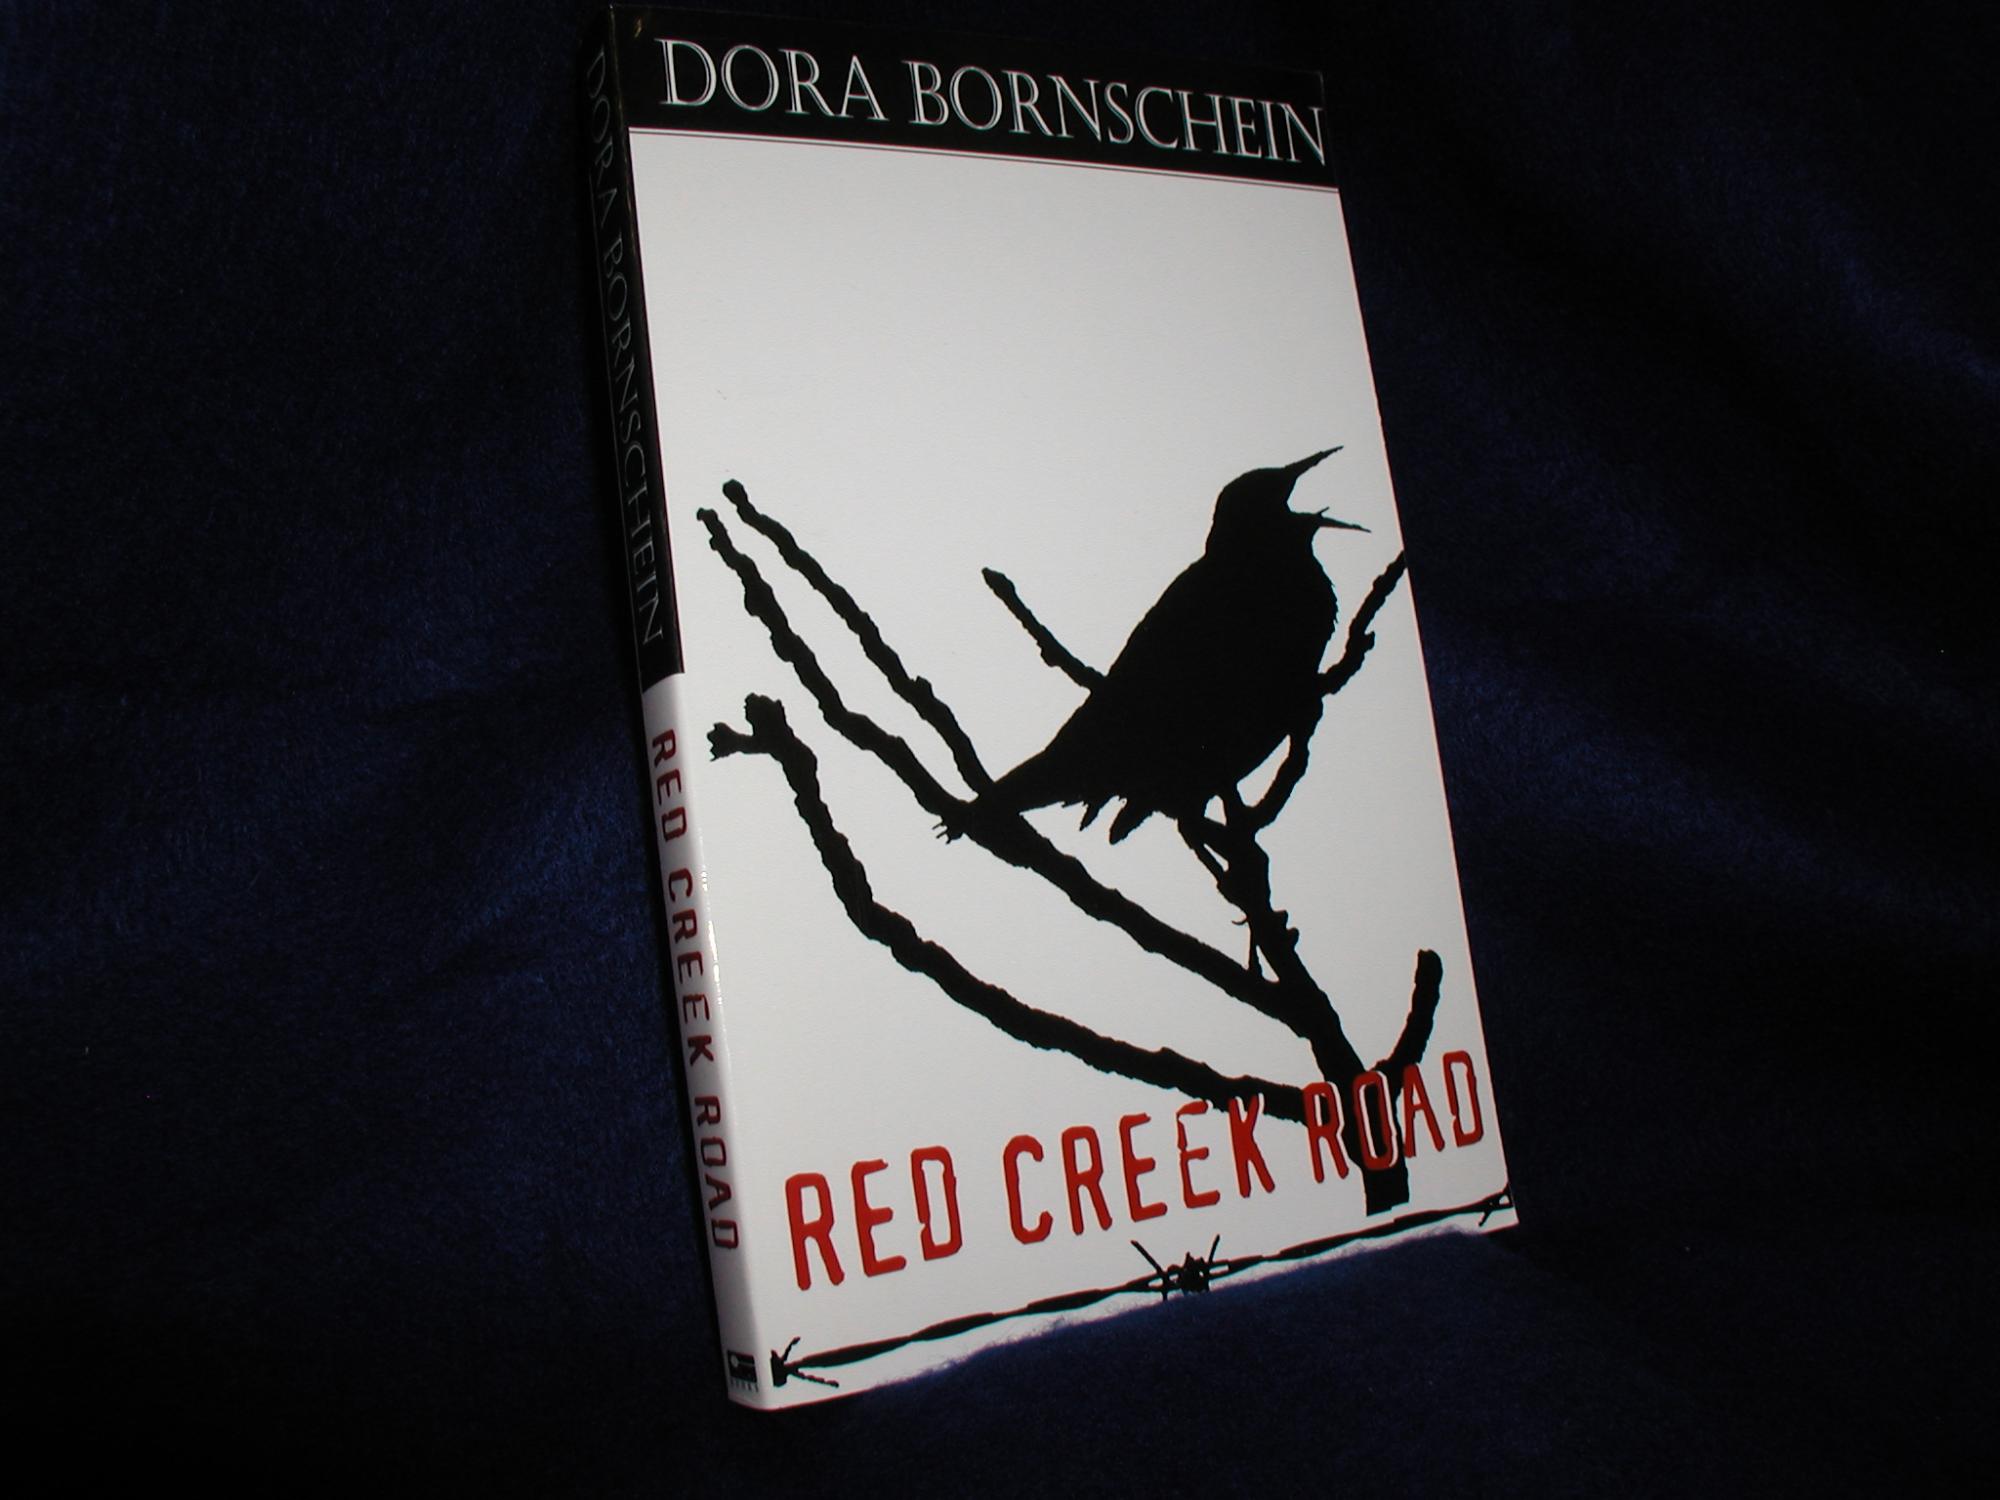 Red Creek Road - Bornschein, Dora J.